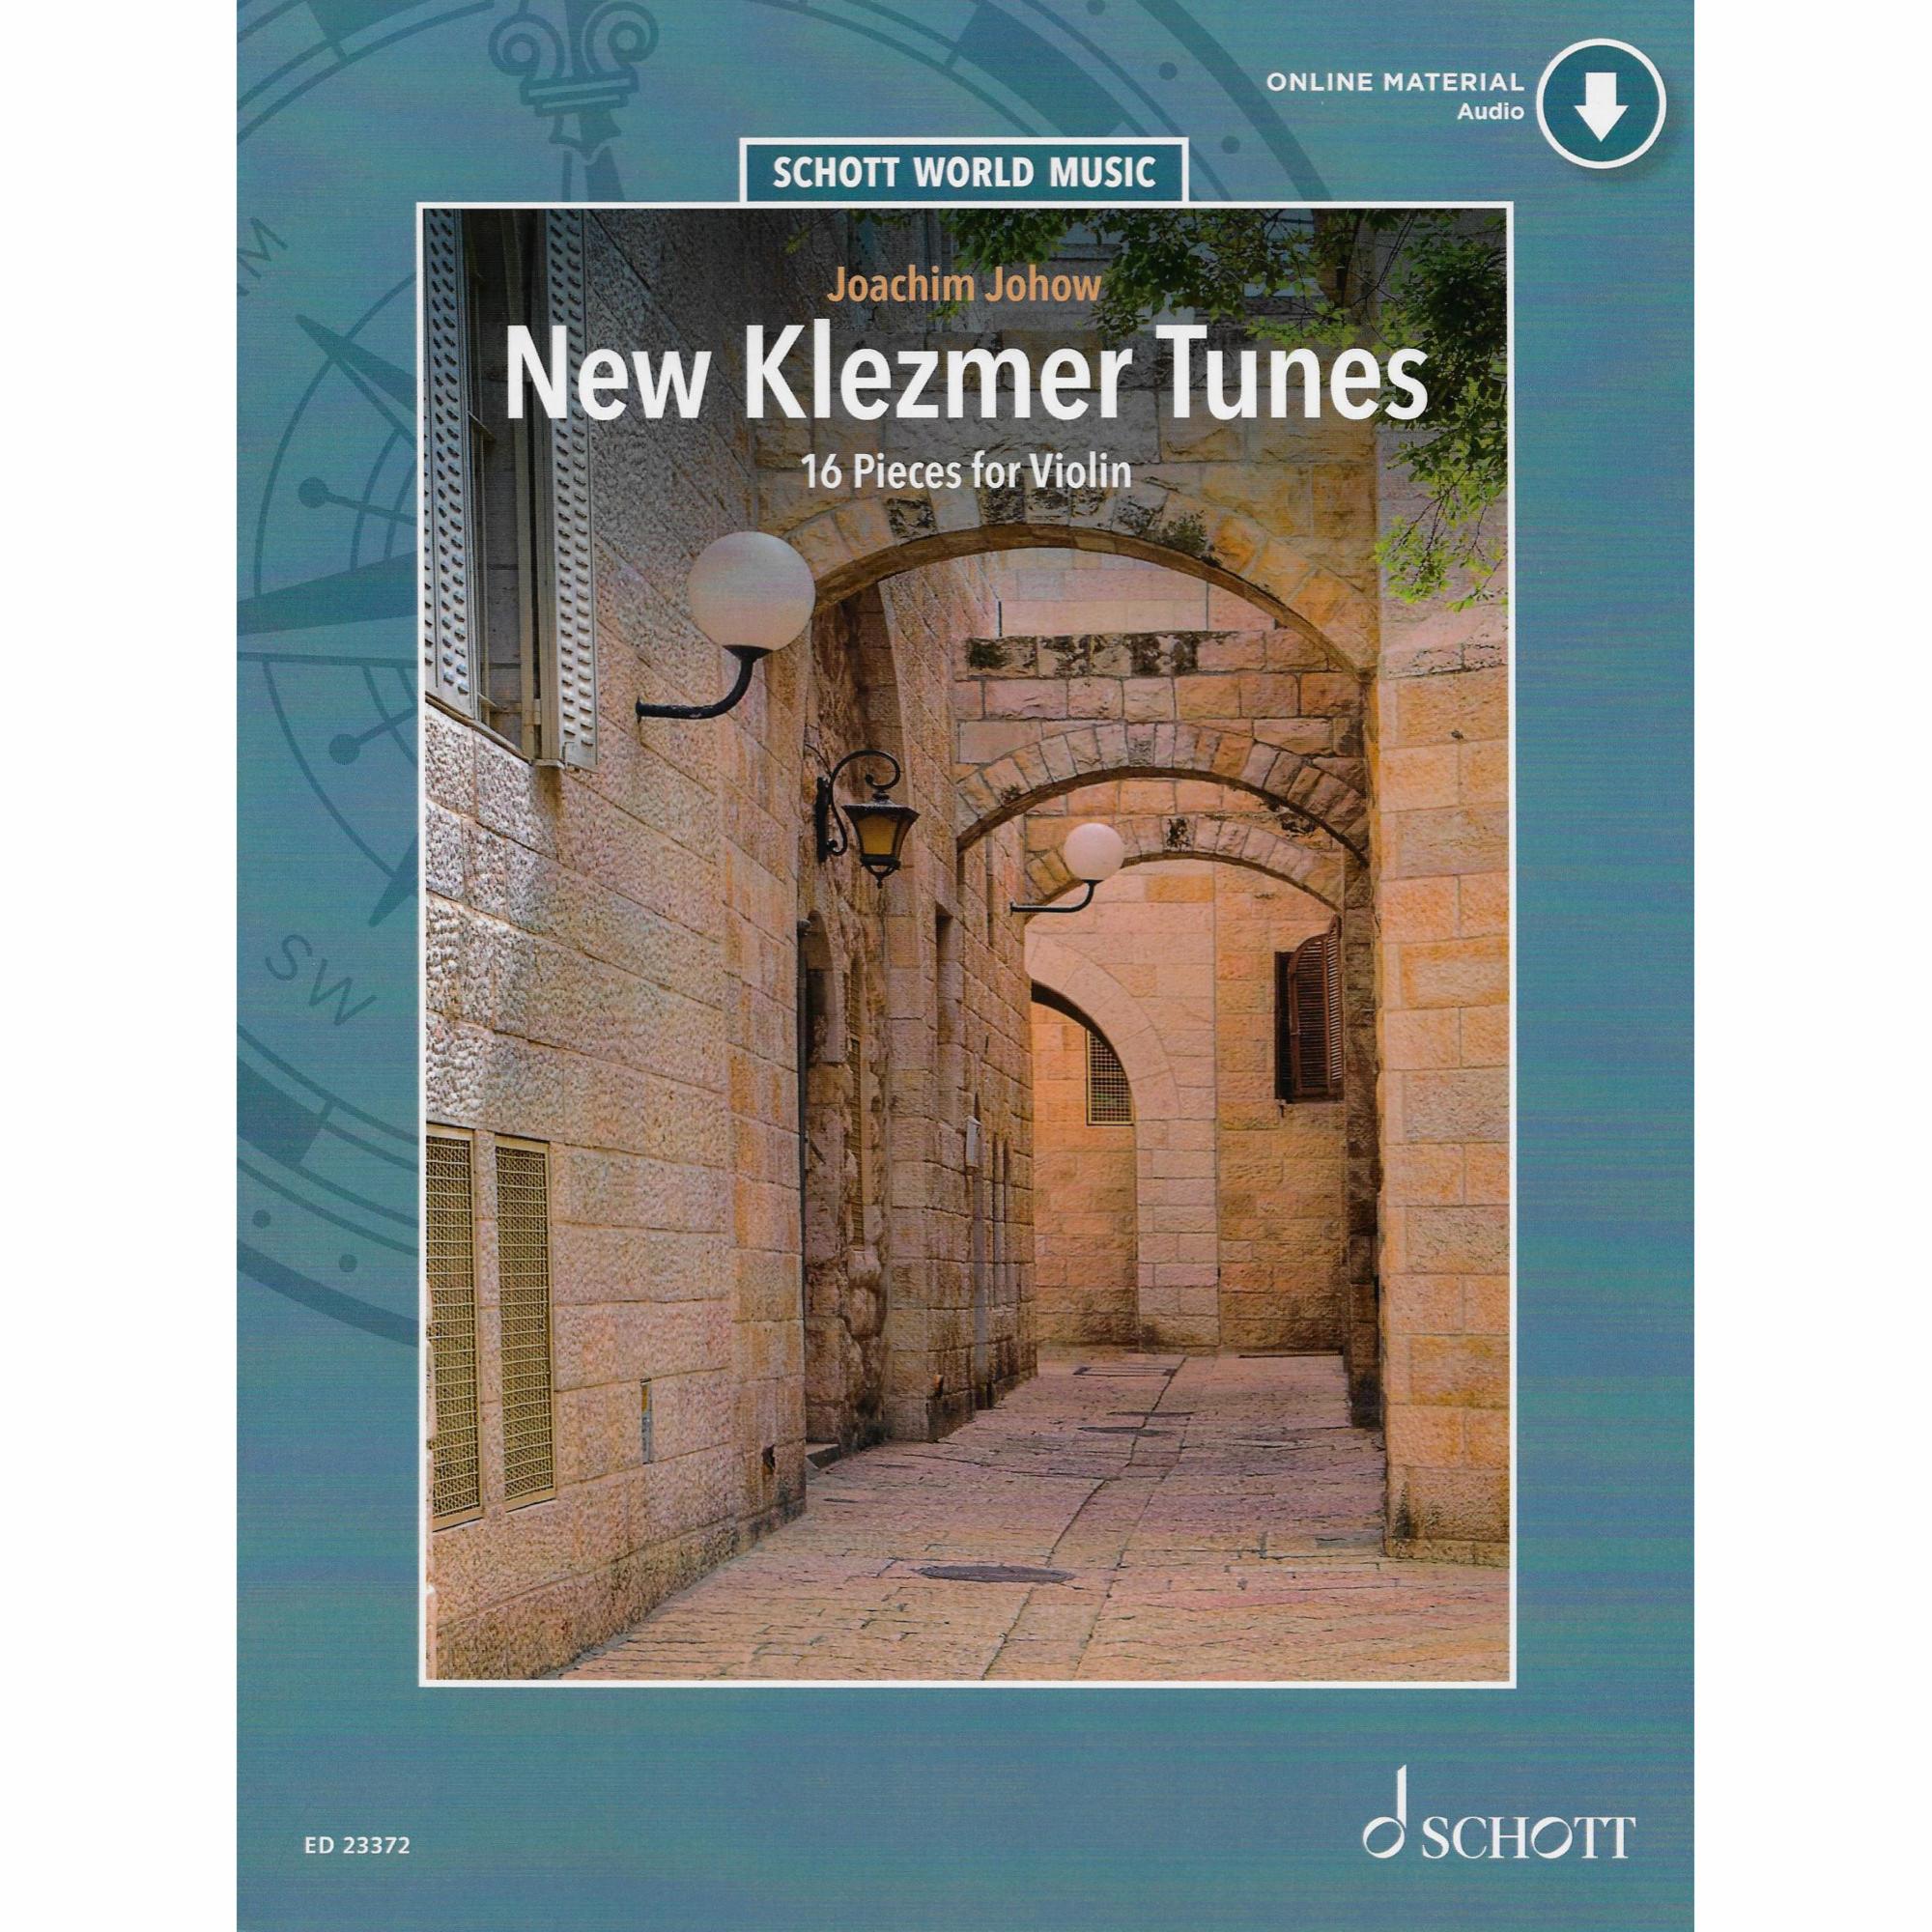 New Klezmer Tunes: 16 Pieces for Violin